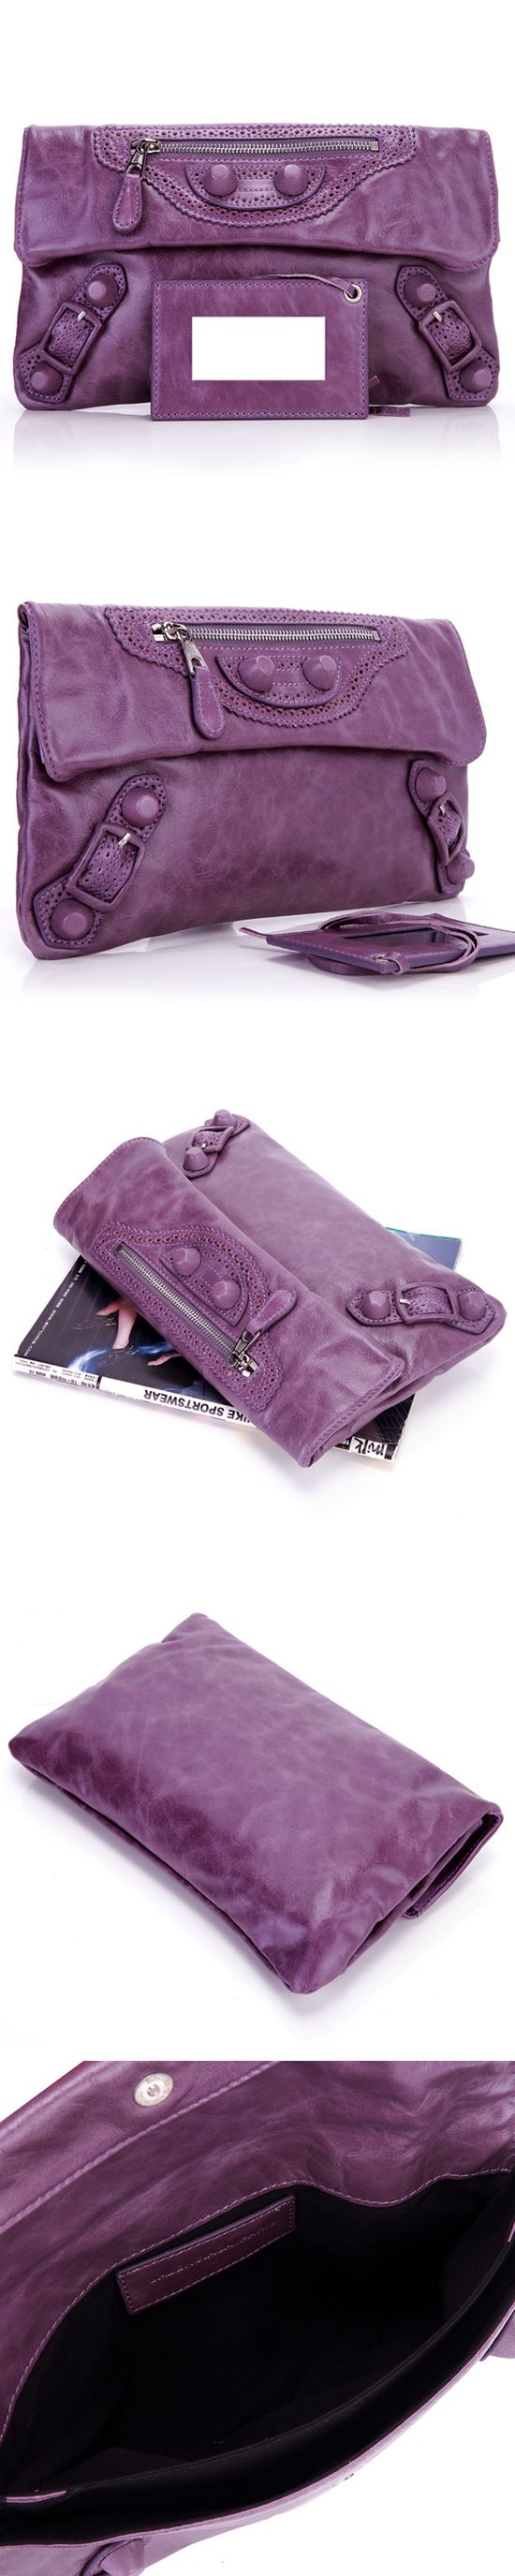 ブランド通販BALENCIAGA-バレンシアガ-330-Leather-ピンク-purple激安屋-ブランドコピー